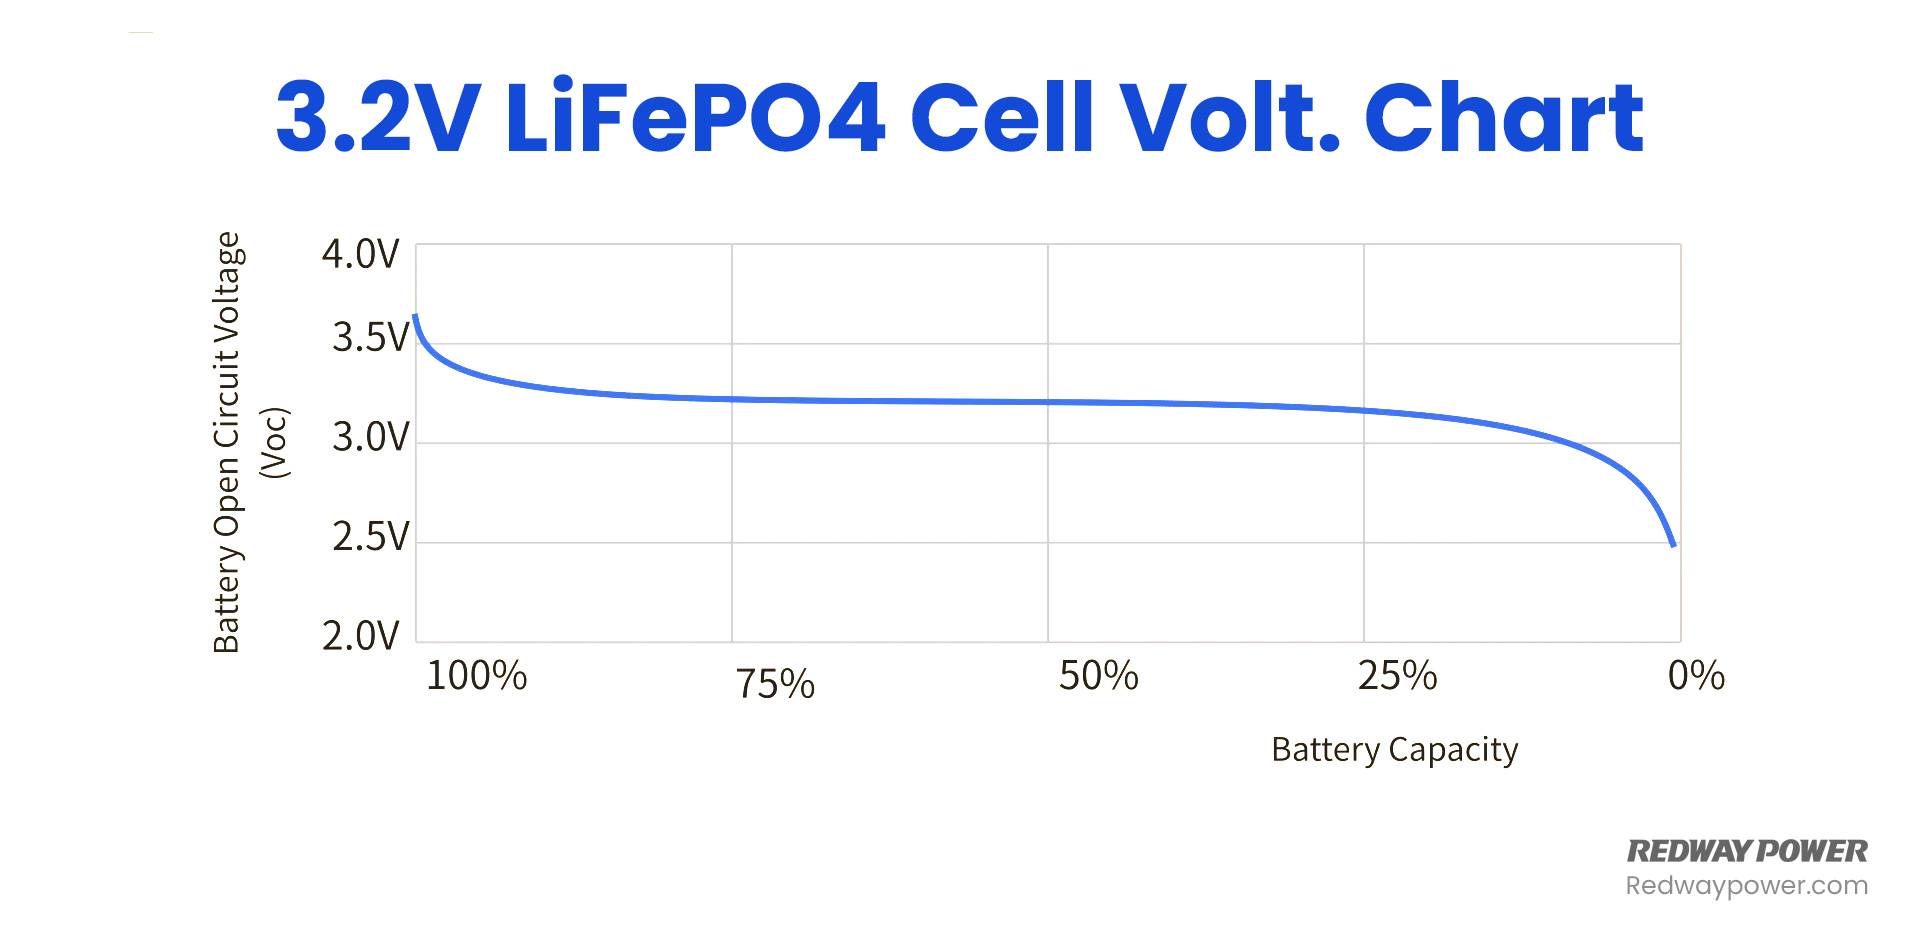 LiFePO4 Voltage Chart (3.2V, 12V, 24V 48V) Comparison, 3.2V LiFePO4 Cell Volt. Chart